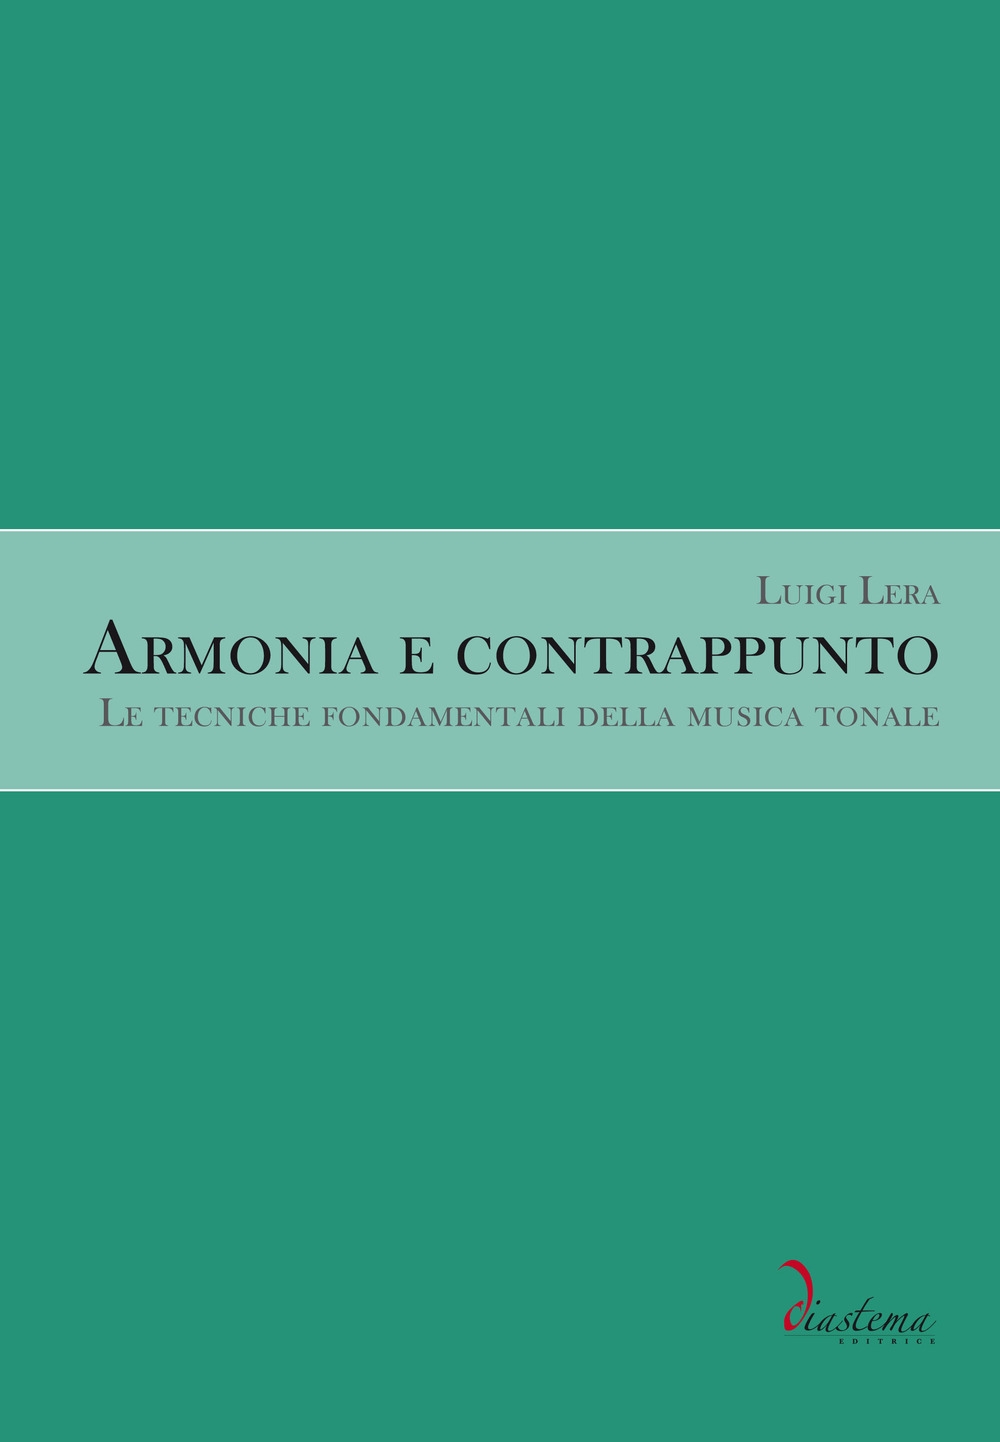 Libri Luigi Lera - Armonia E Contrappunto. Le Tecniche Fondamentali Della Musica Tonale NUOVO SIGILLATO, EDIZIONE DEL 04/10/2017 SUBITO DISPONIBILE